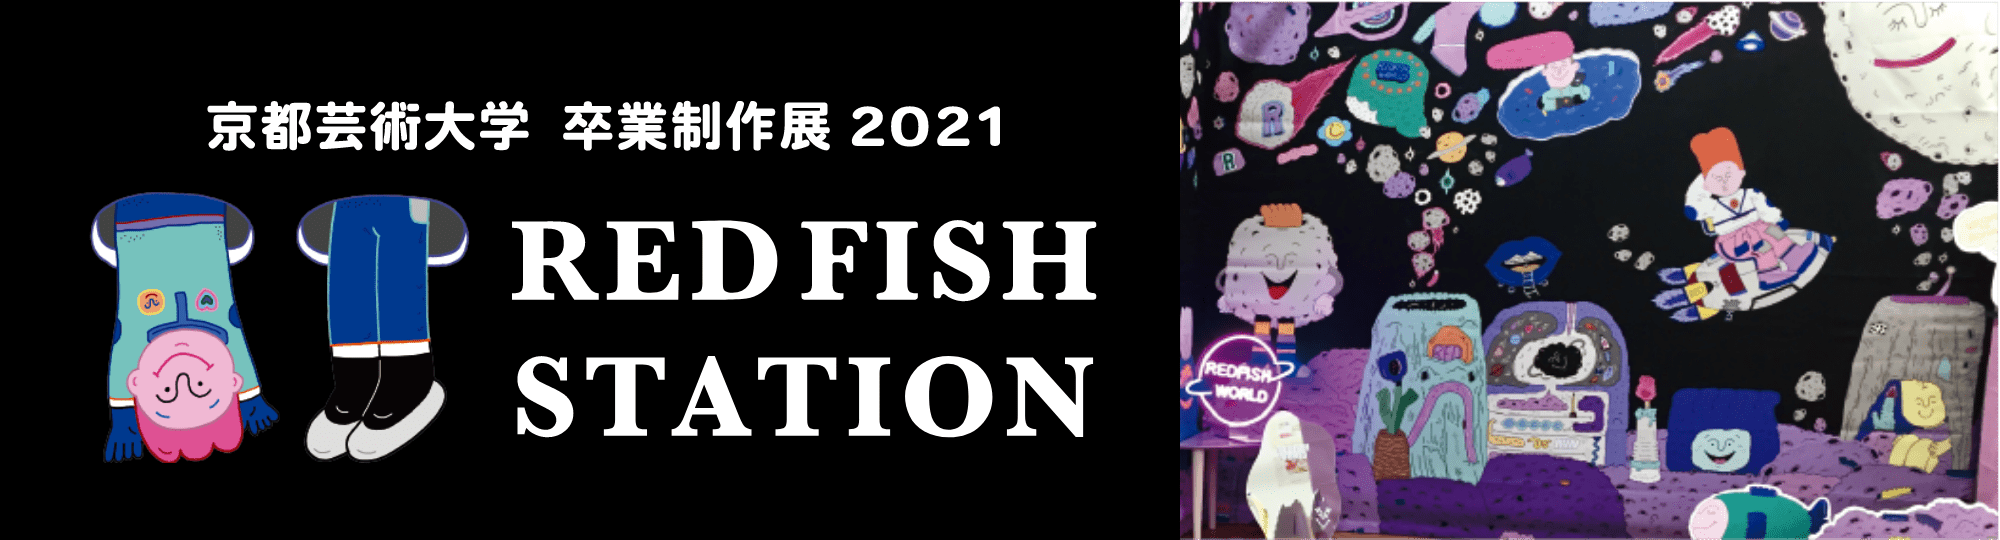 卒業制作展2021 Redfish station